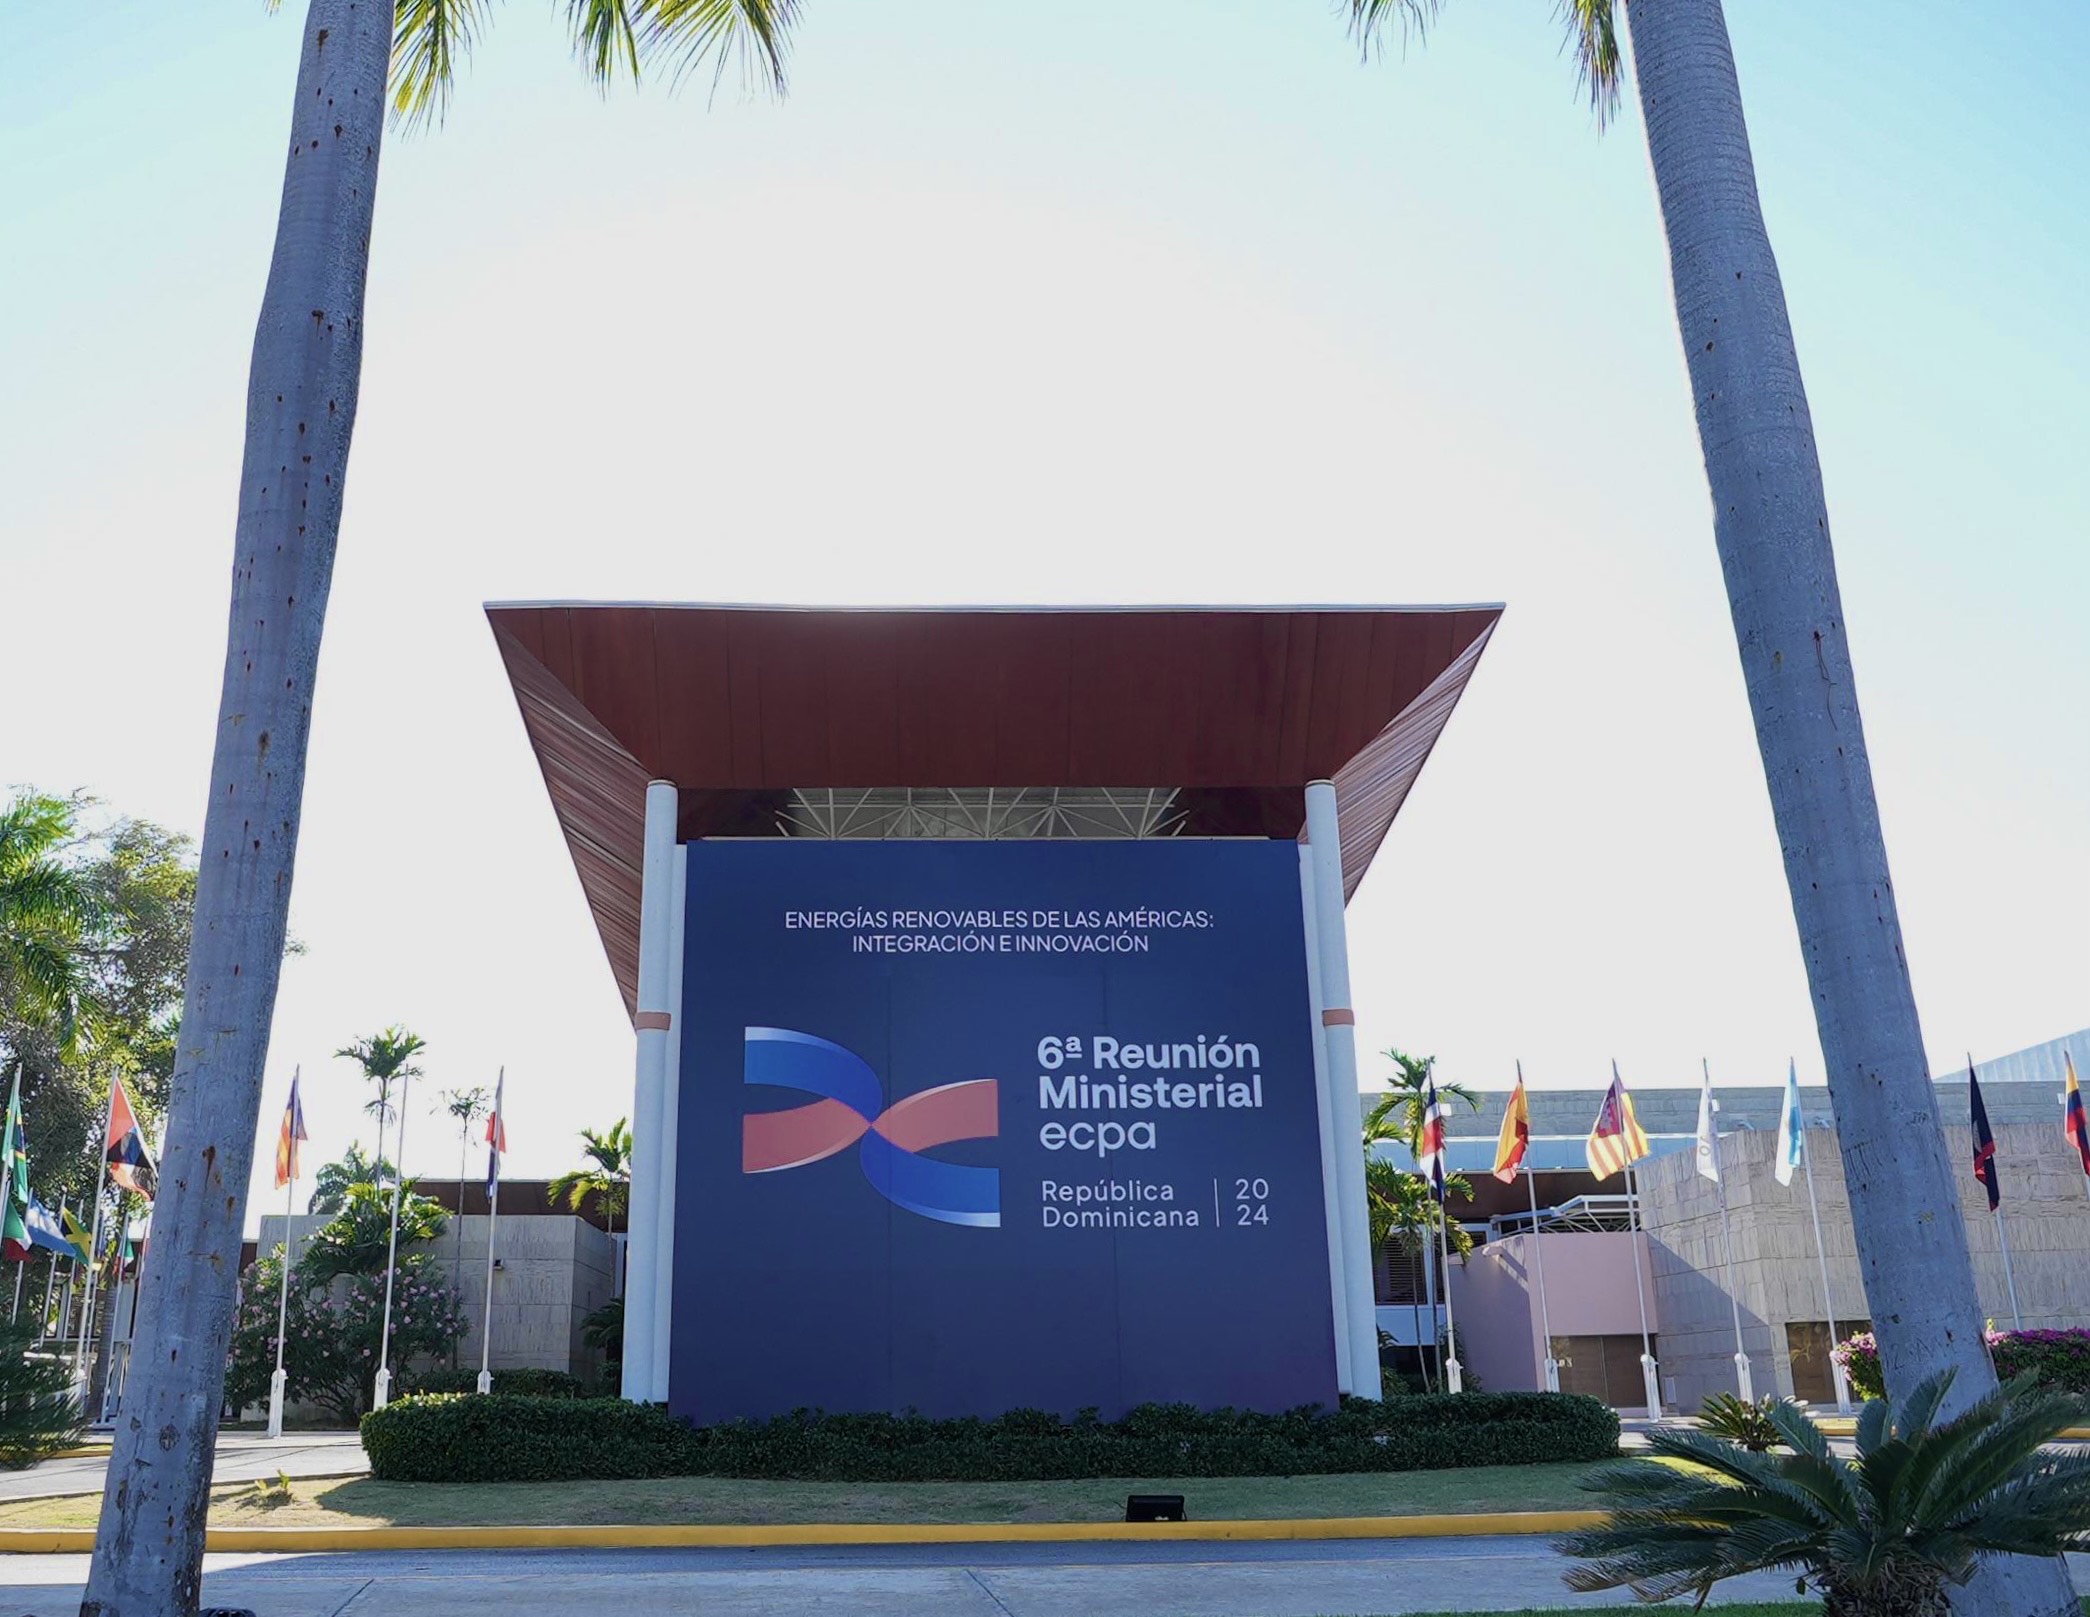 REPÚBLICA DOMINICANA: Inicia este jueves la VI reunión Ministerial de Energía y Clima de las Américas ECPA